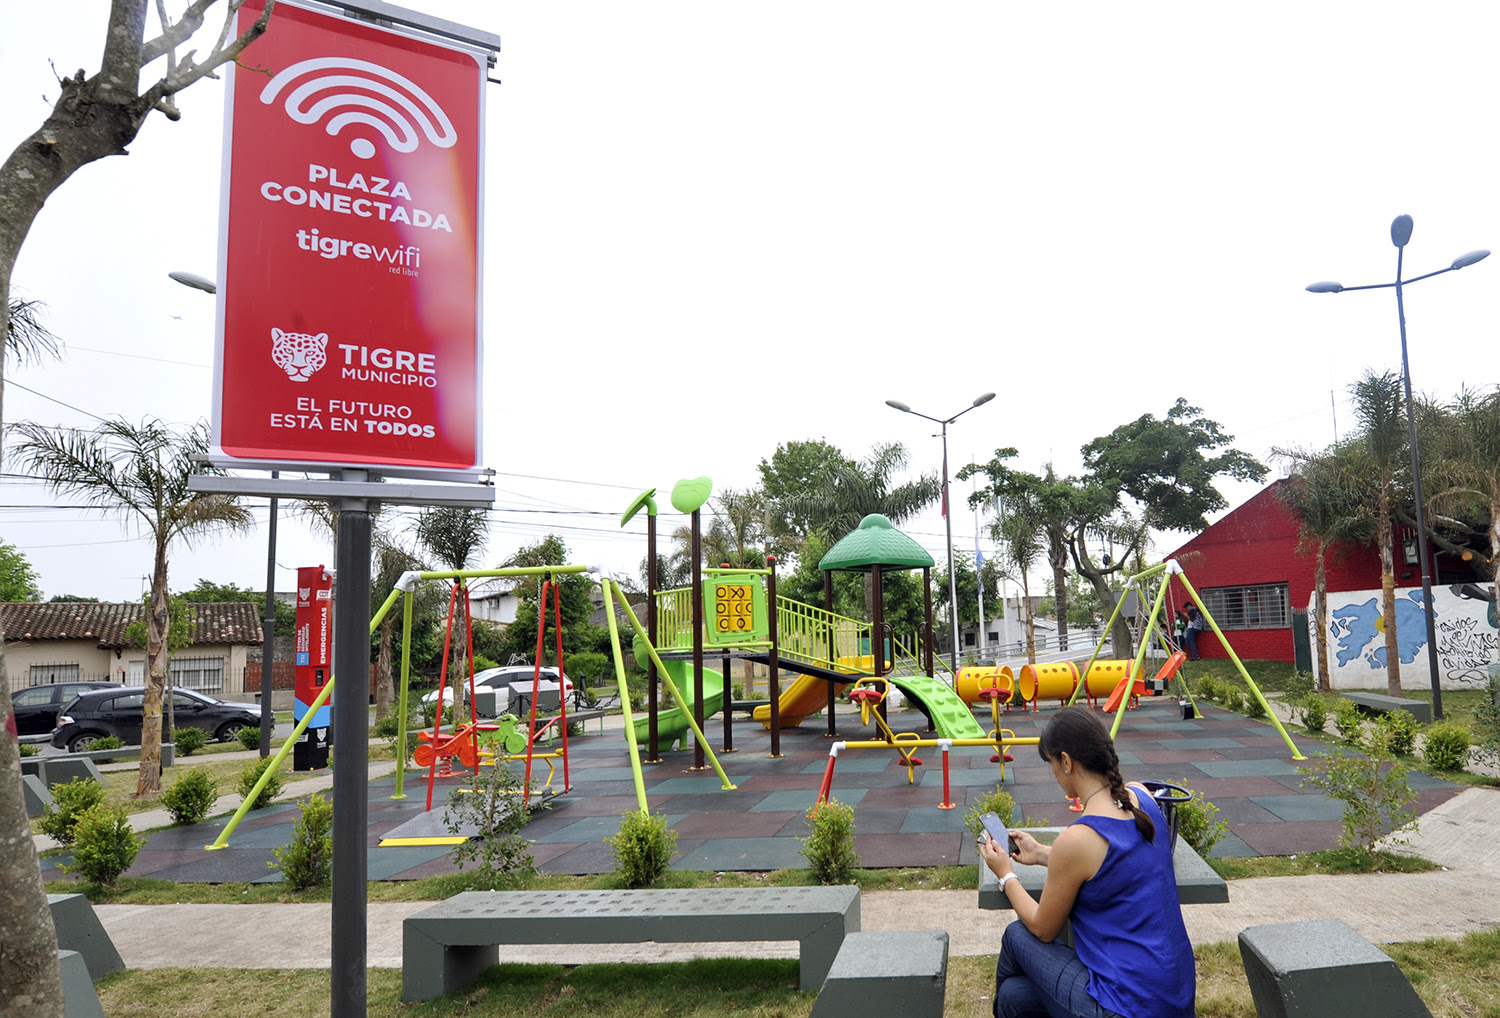 El Municipio pone a disposición puntos gratuitos de conectividad WiFi para estudiantes de Tigre